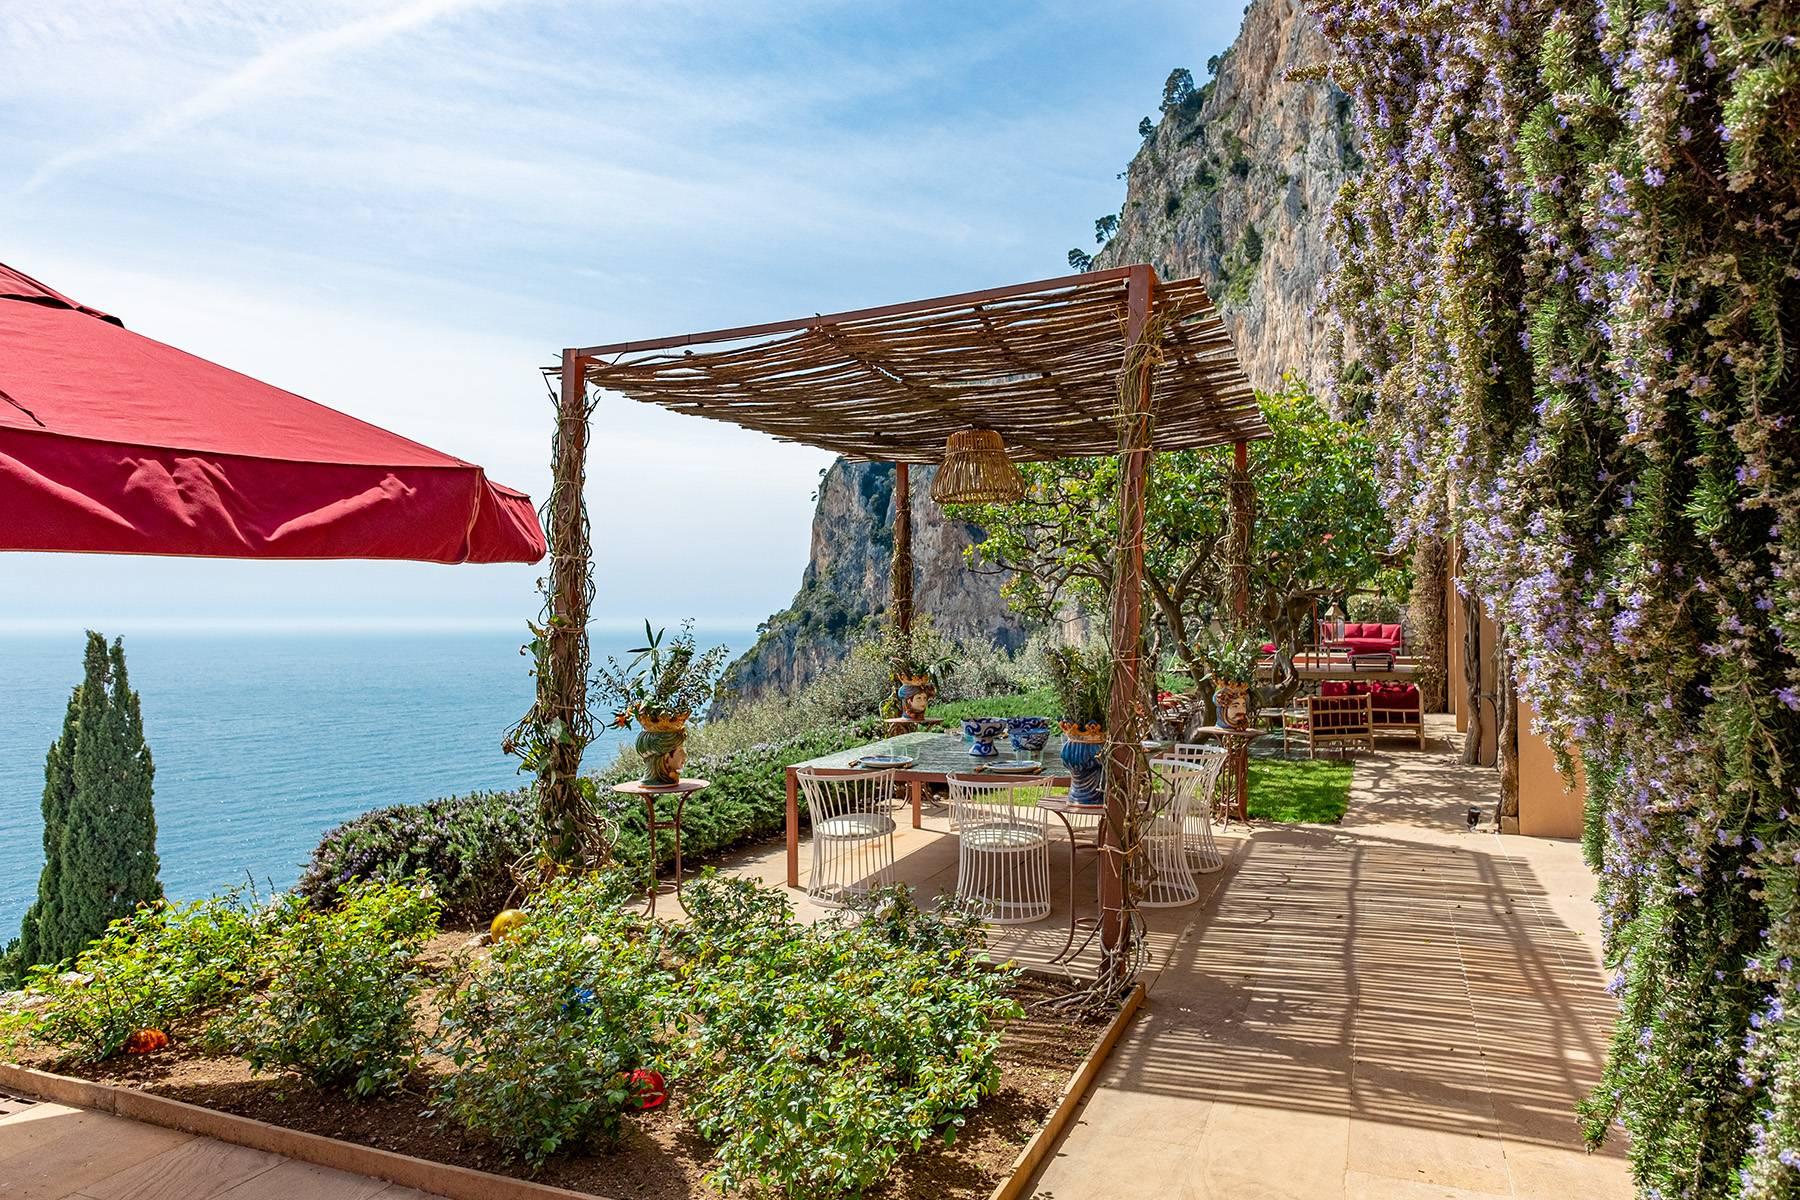 Remarquable villa design avec piscine sculptée surplombant les rochers Faraglioni. - 19